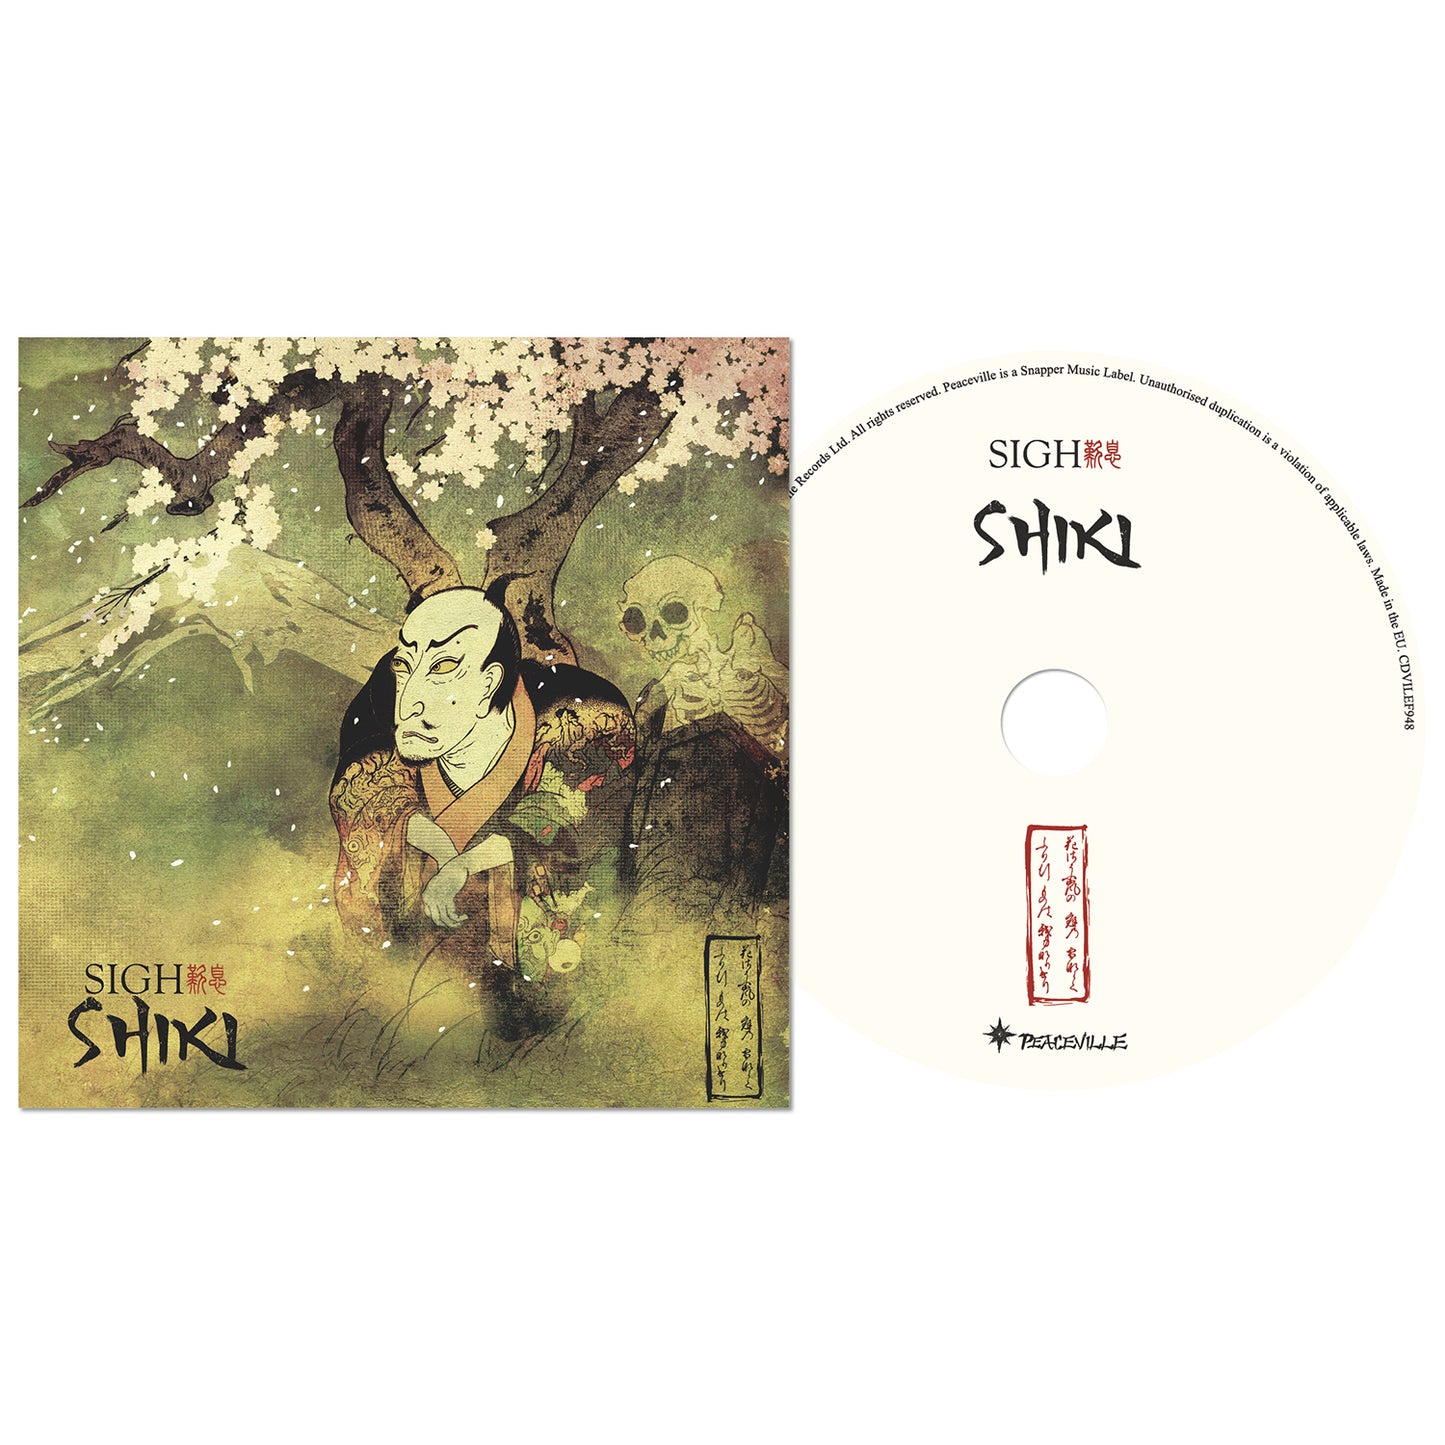 Shiki CD